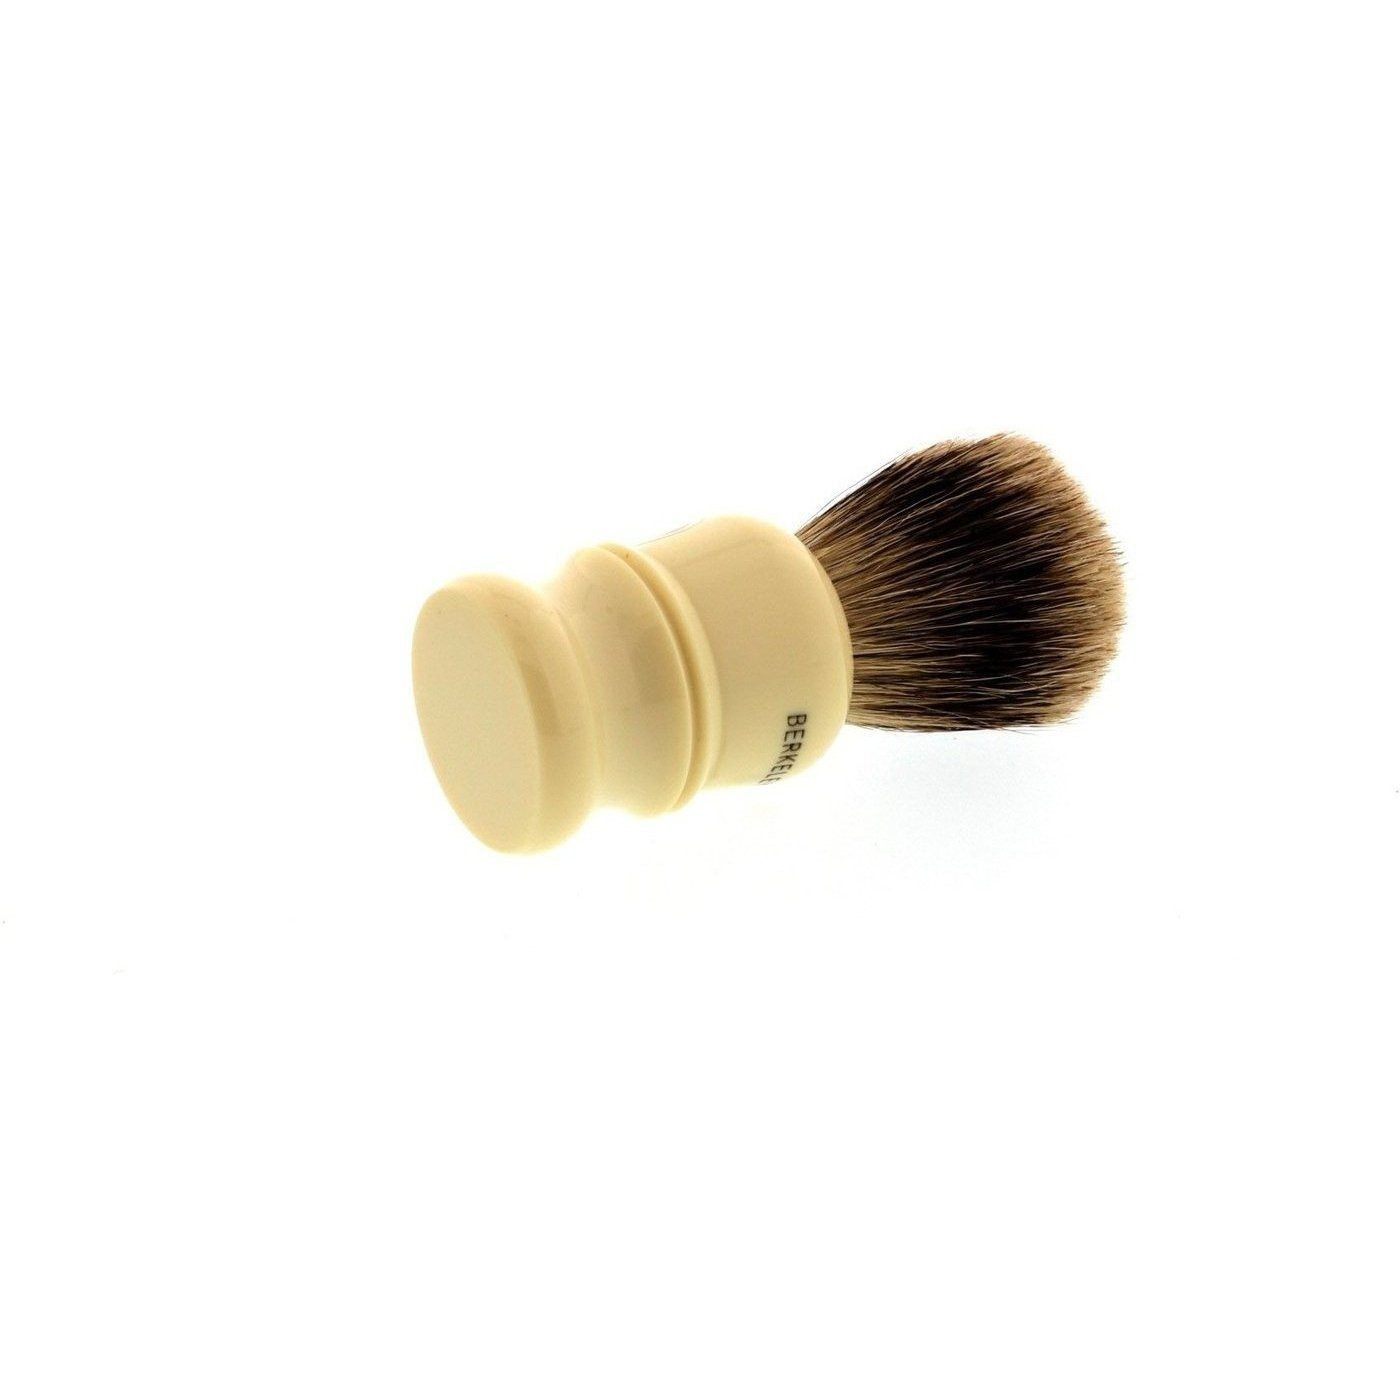 Product image 3 for Simpsons Berkeley Best Badger Shaving Brush 46B